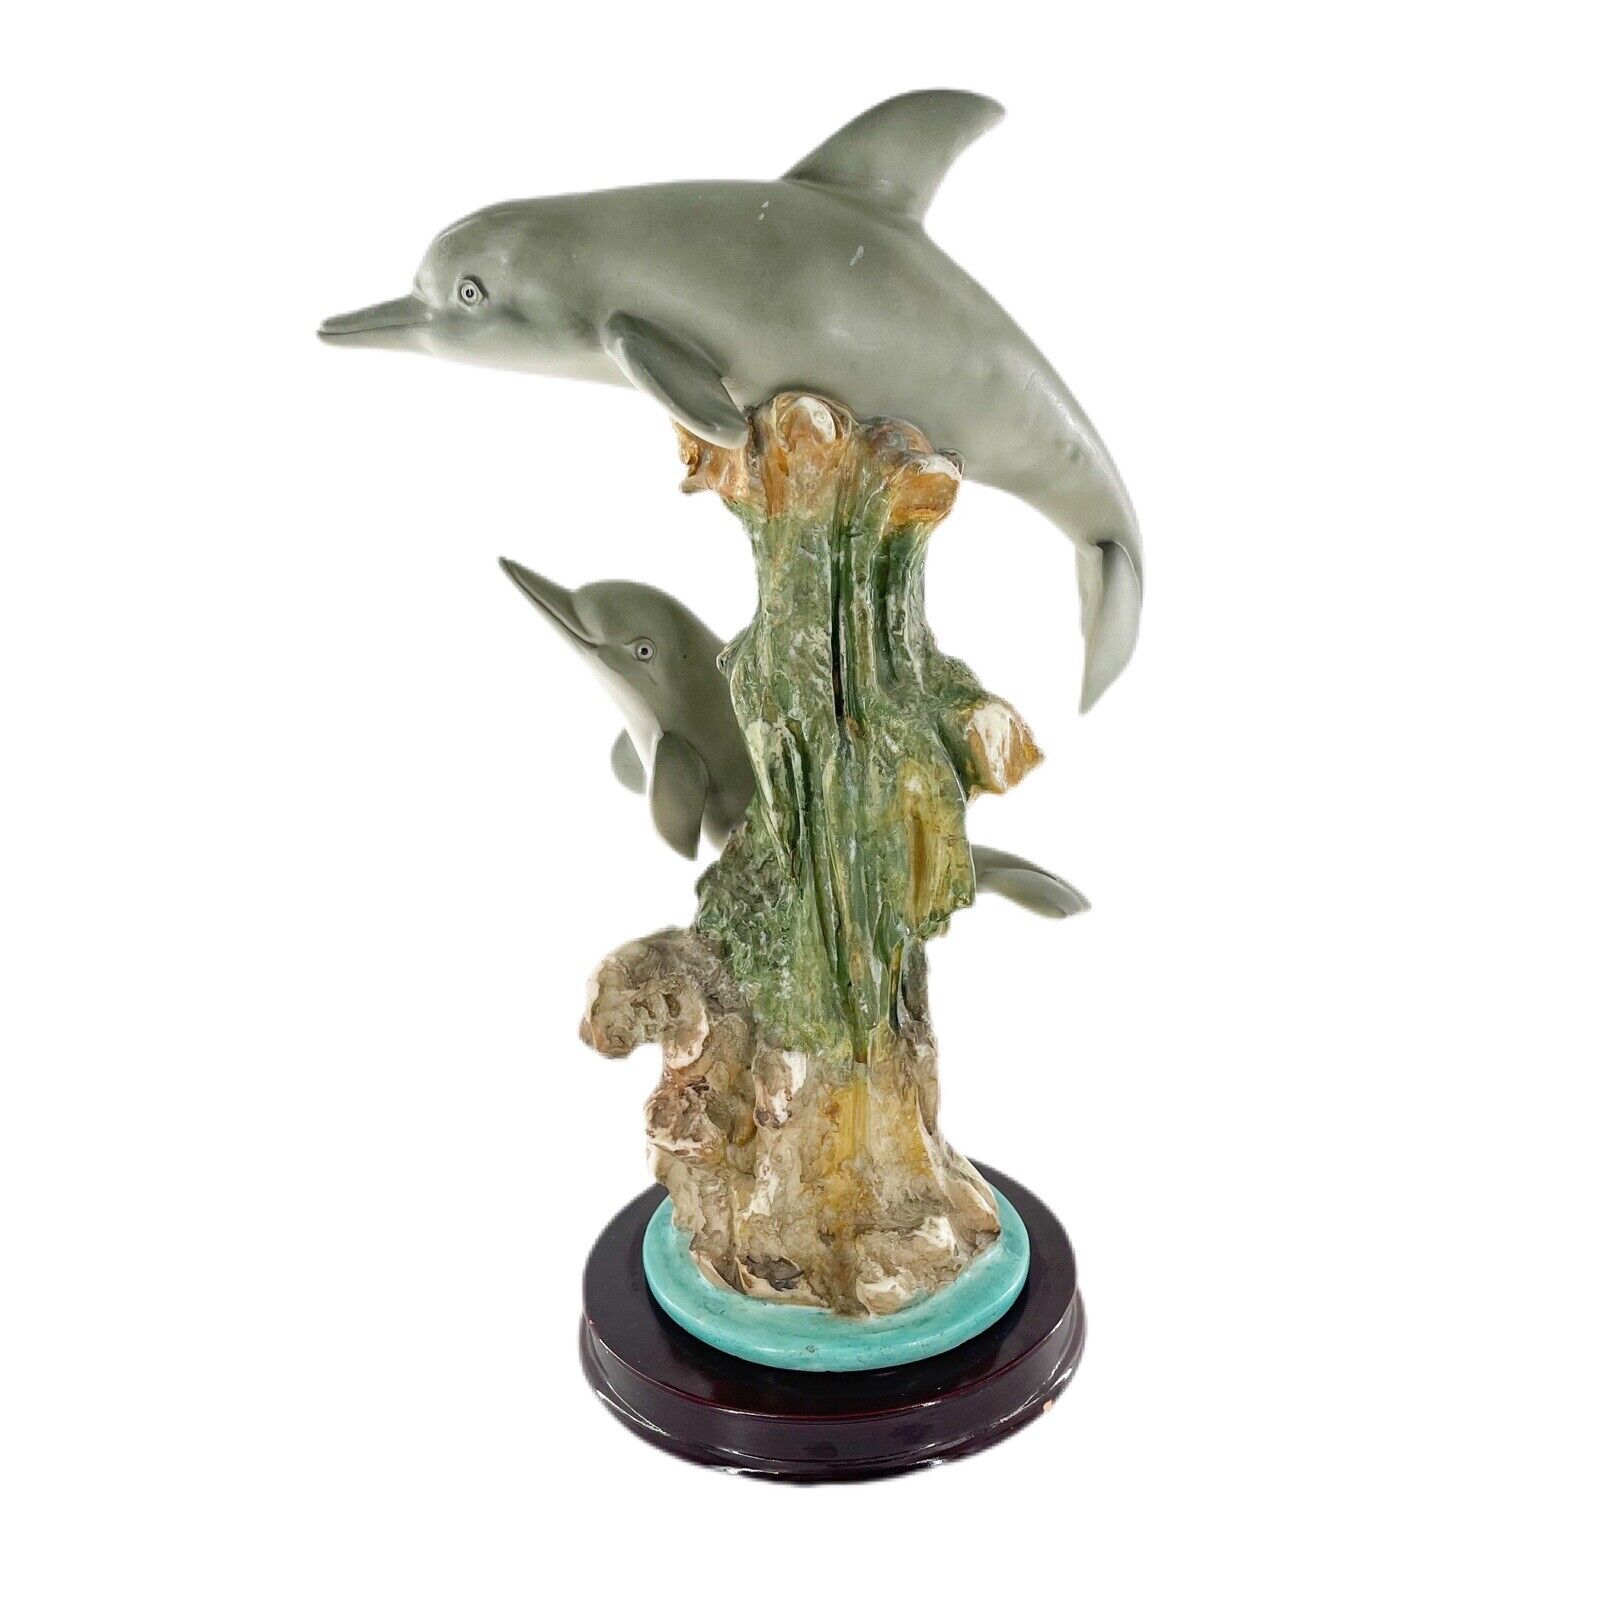 Dolphin Figurine Sea World Souvenir Ocean Decor Beach  Collectible Seaworld Read